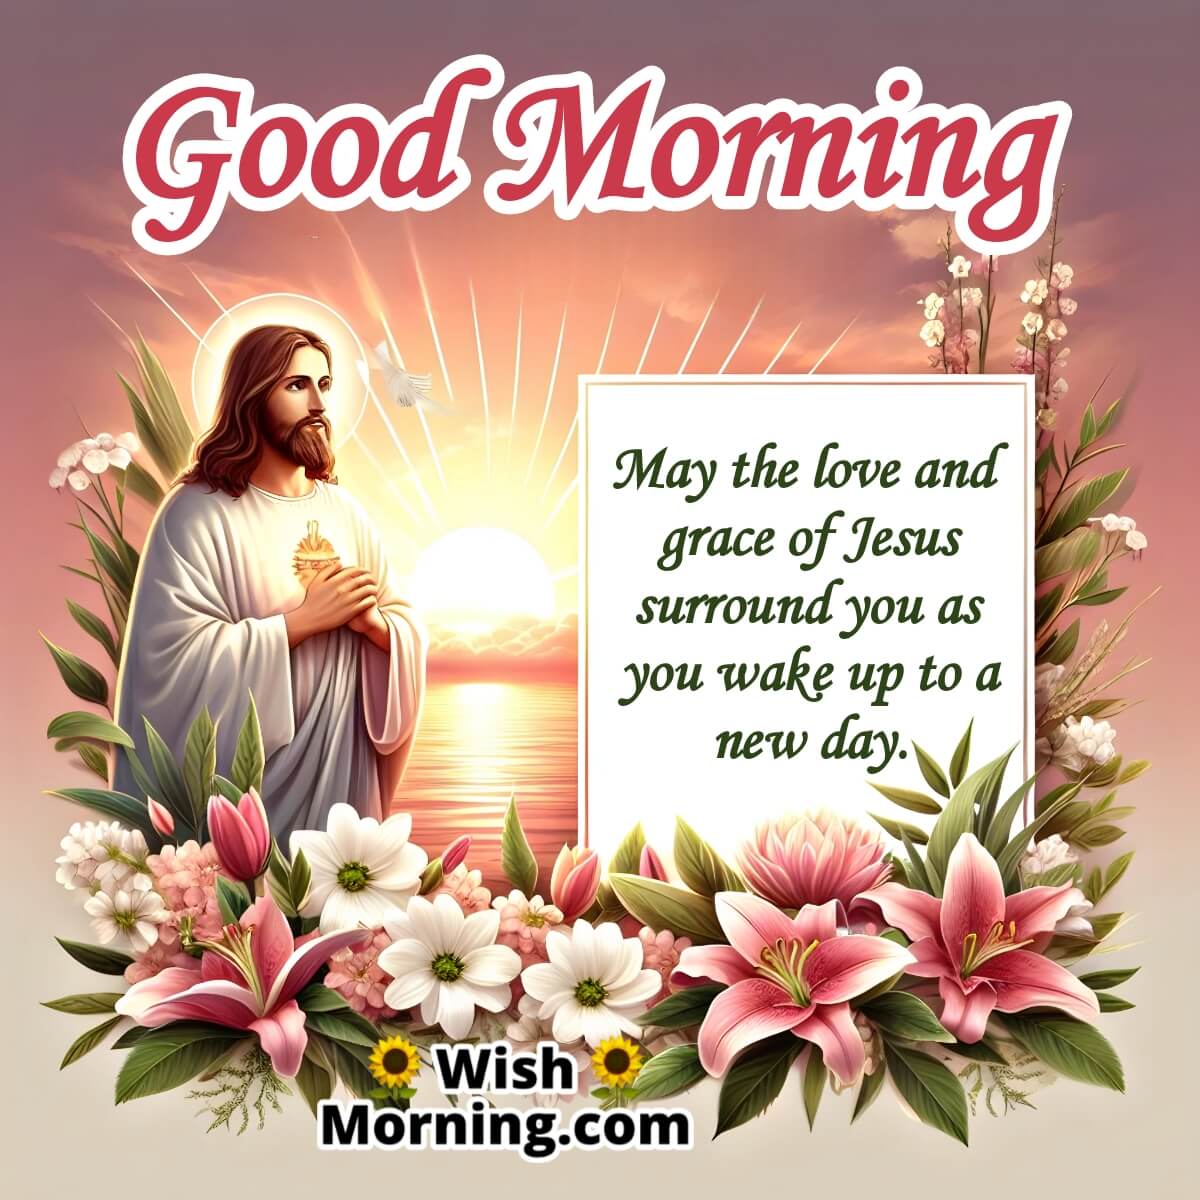 Good Morning Jesus Wish Image